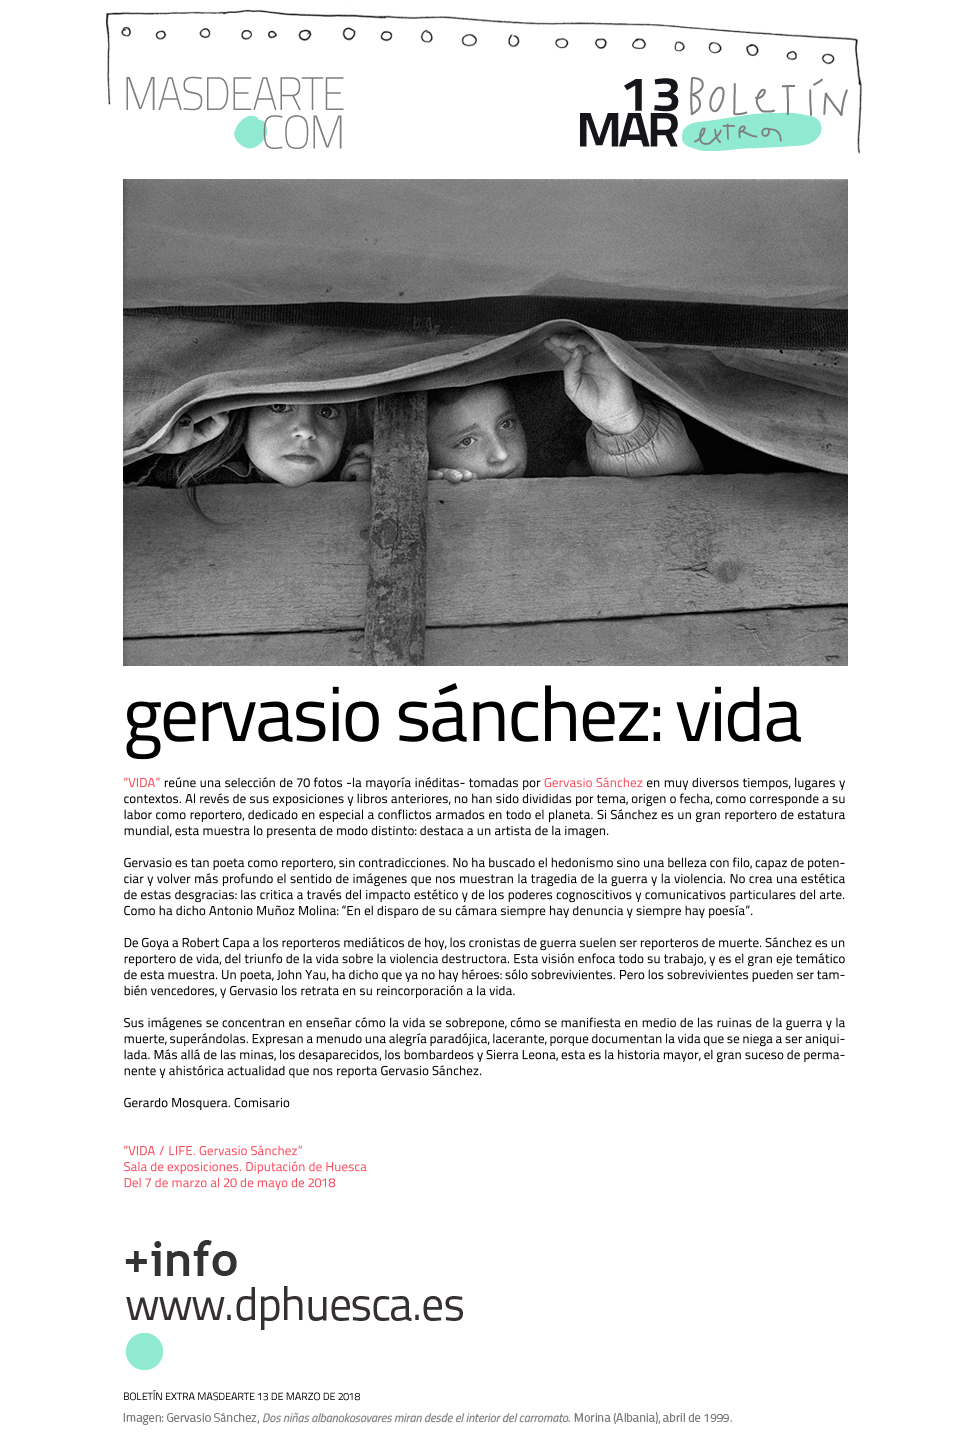 VIDA / LIFE. Gervasio Sánchez. Exposición en la Sala de exposiciones de la Diputación de Huesca, hasta el 20 de mayo de 2018